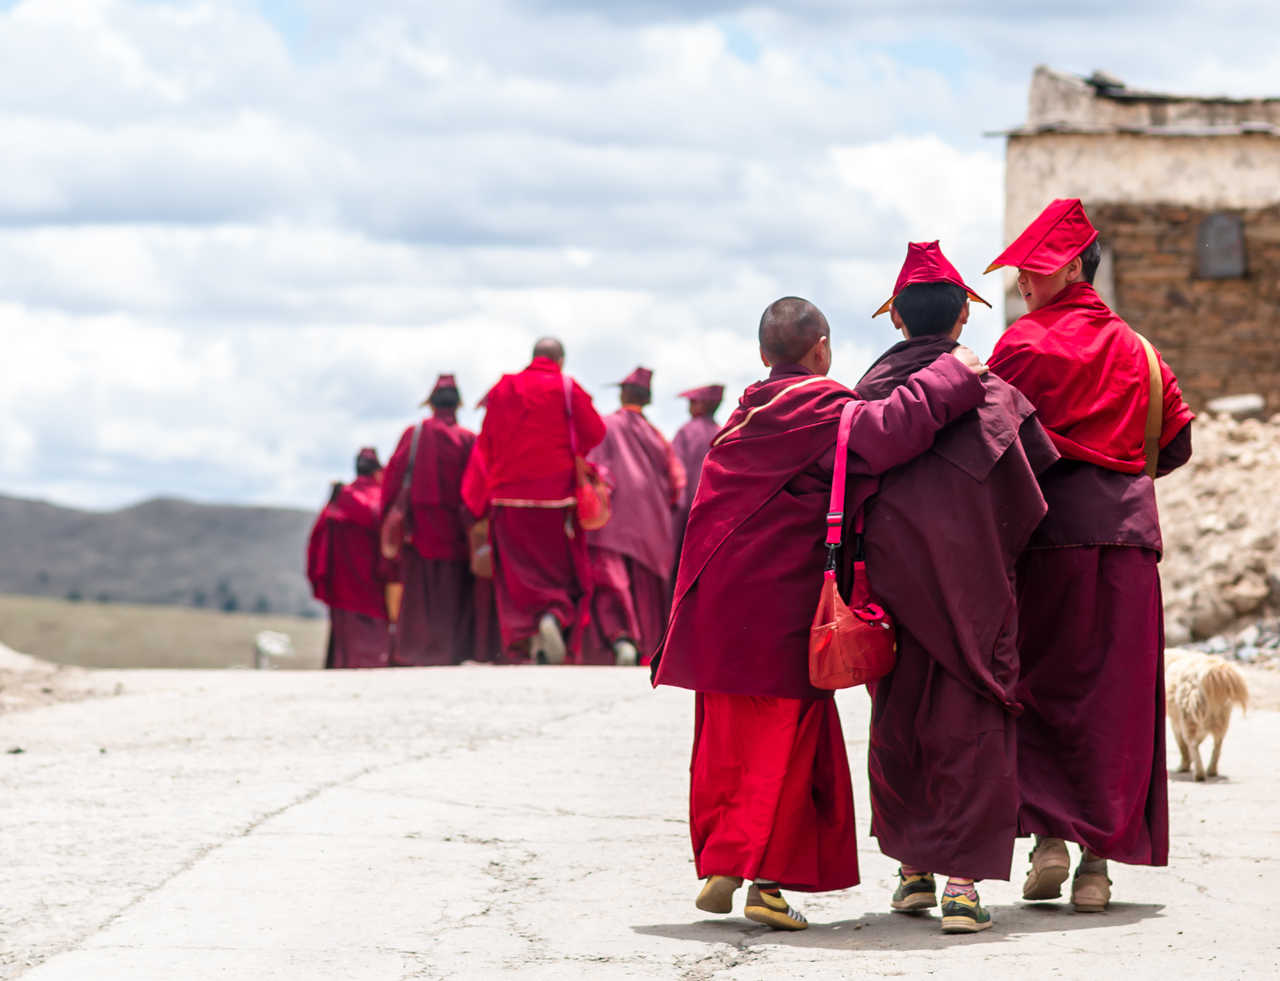 Groupe d'étudiants de moines tibétains au Tibet